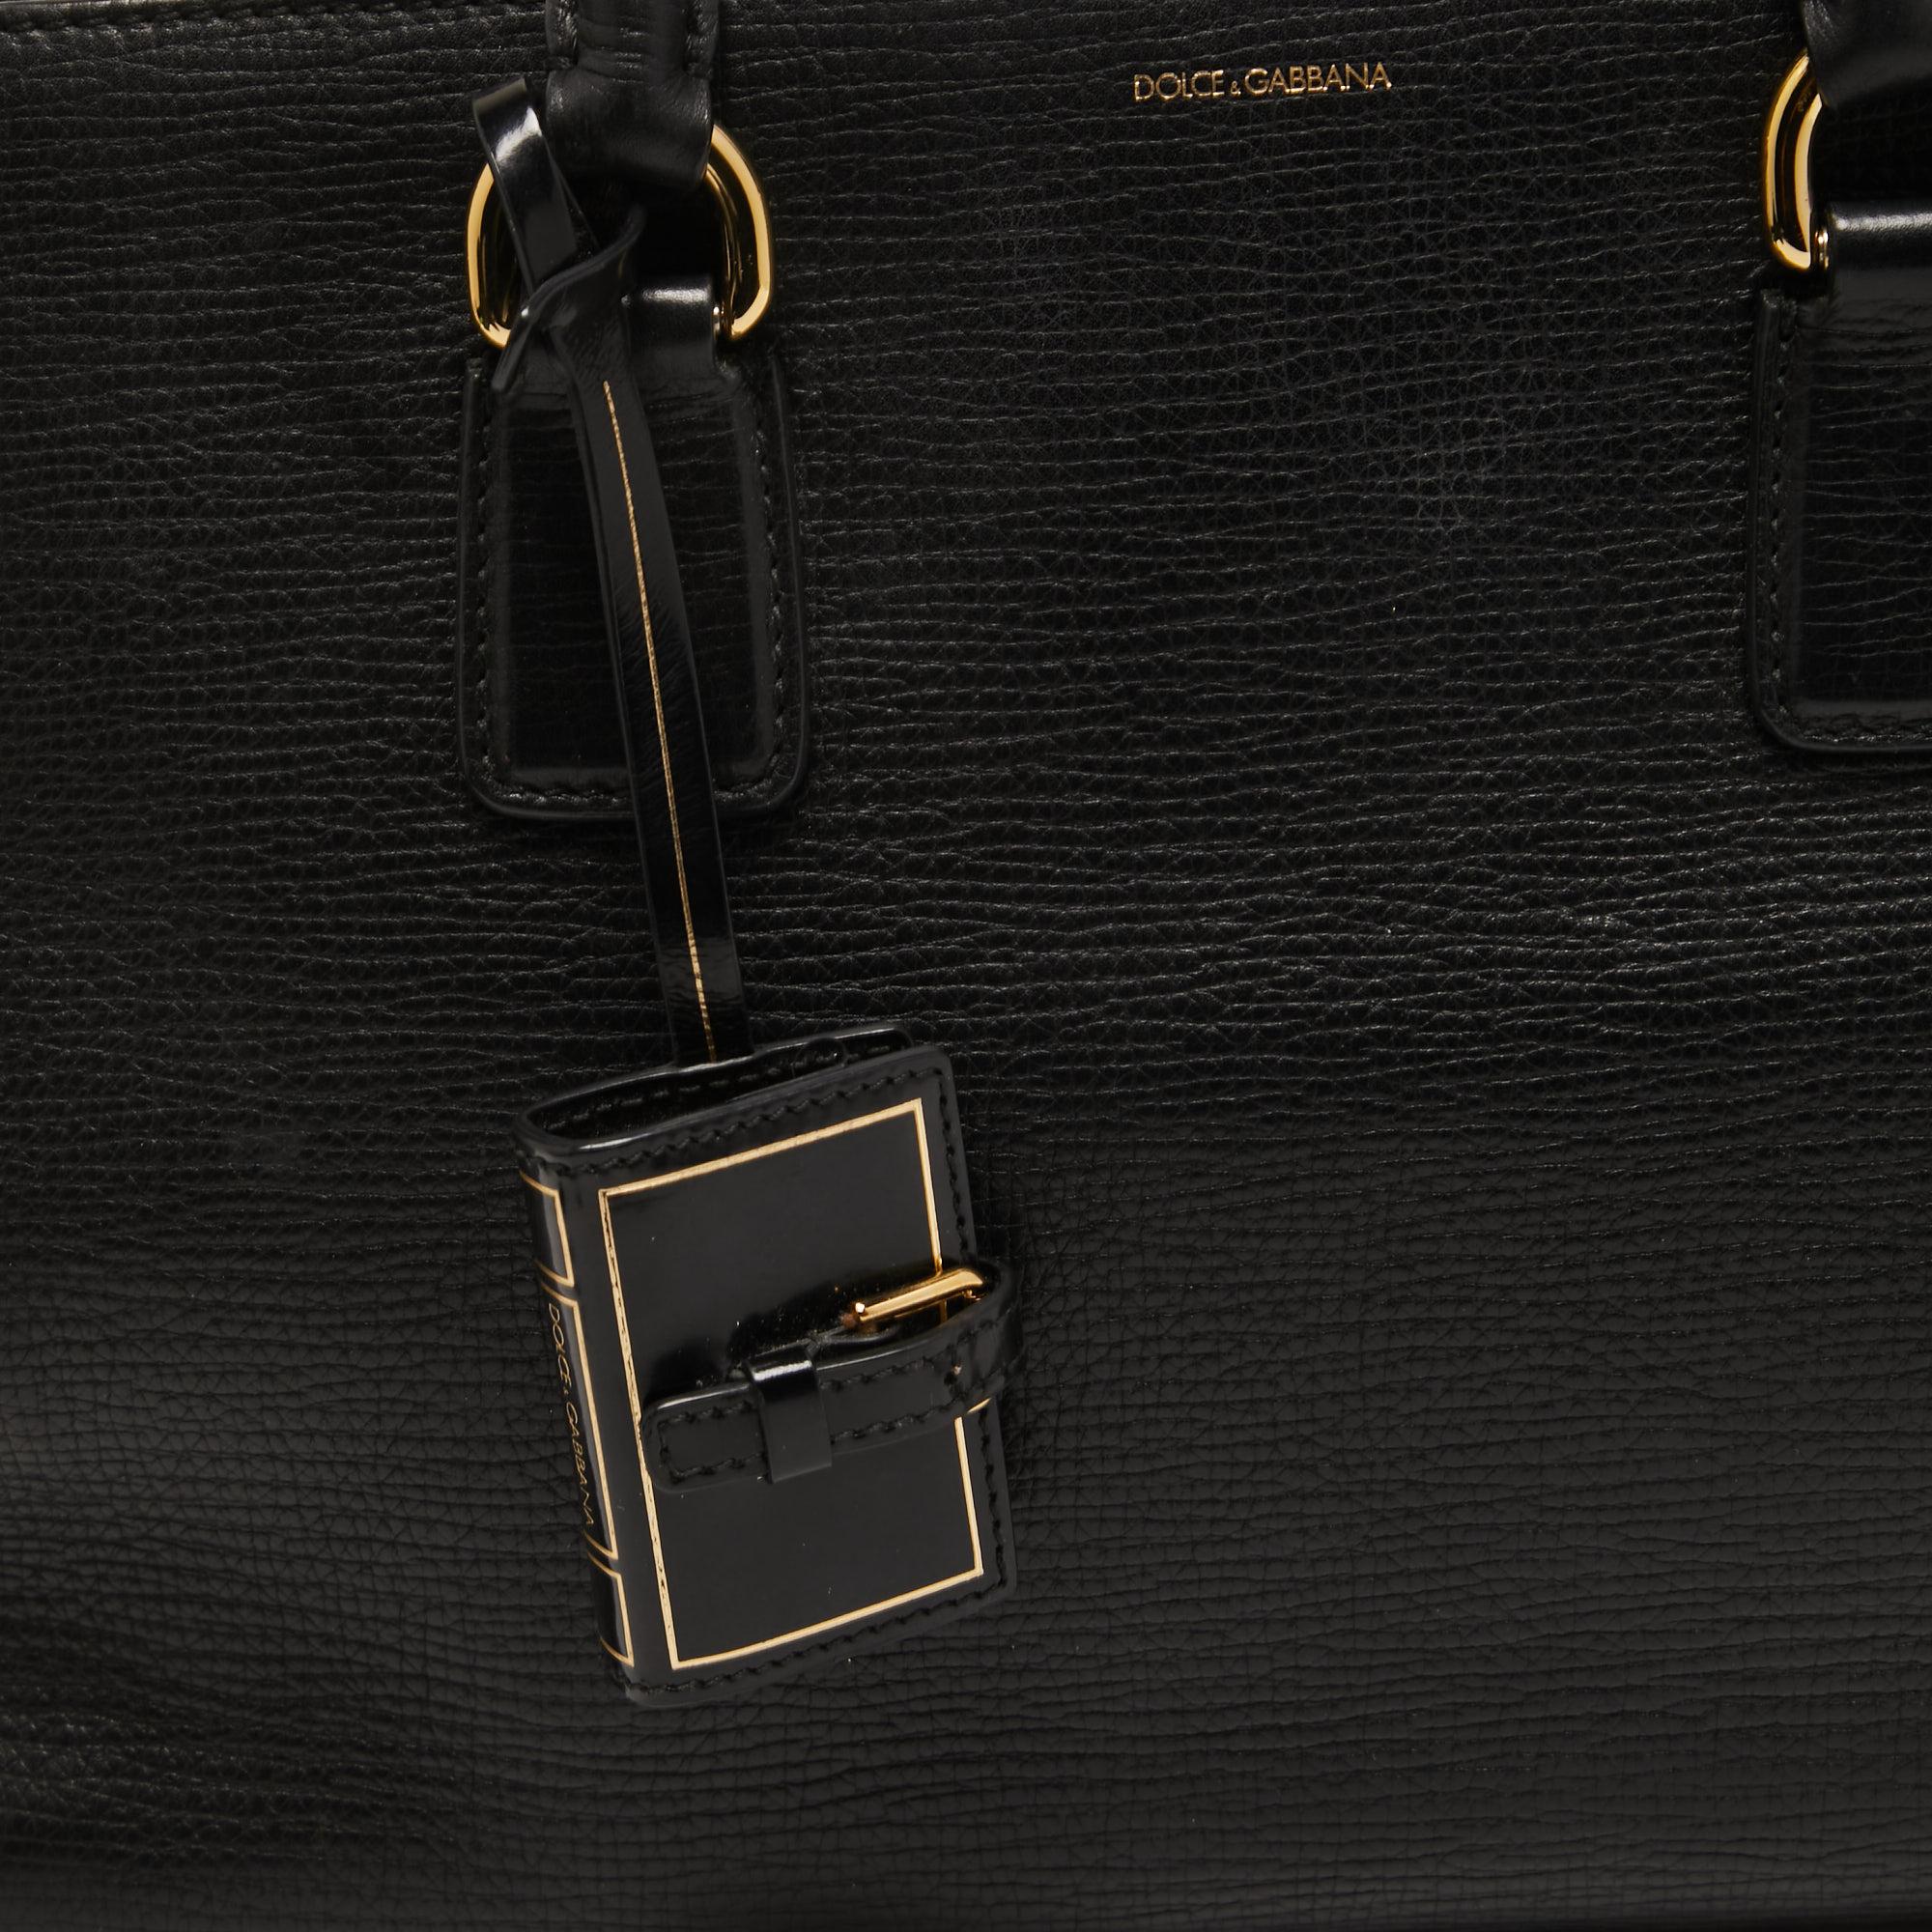 Dolce & Gabbana Black Leather Multi Compartment Tote 13